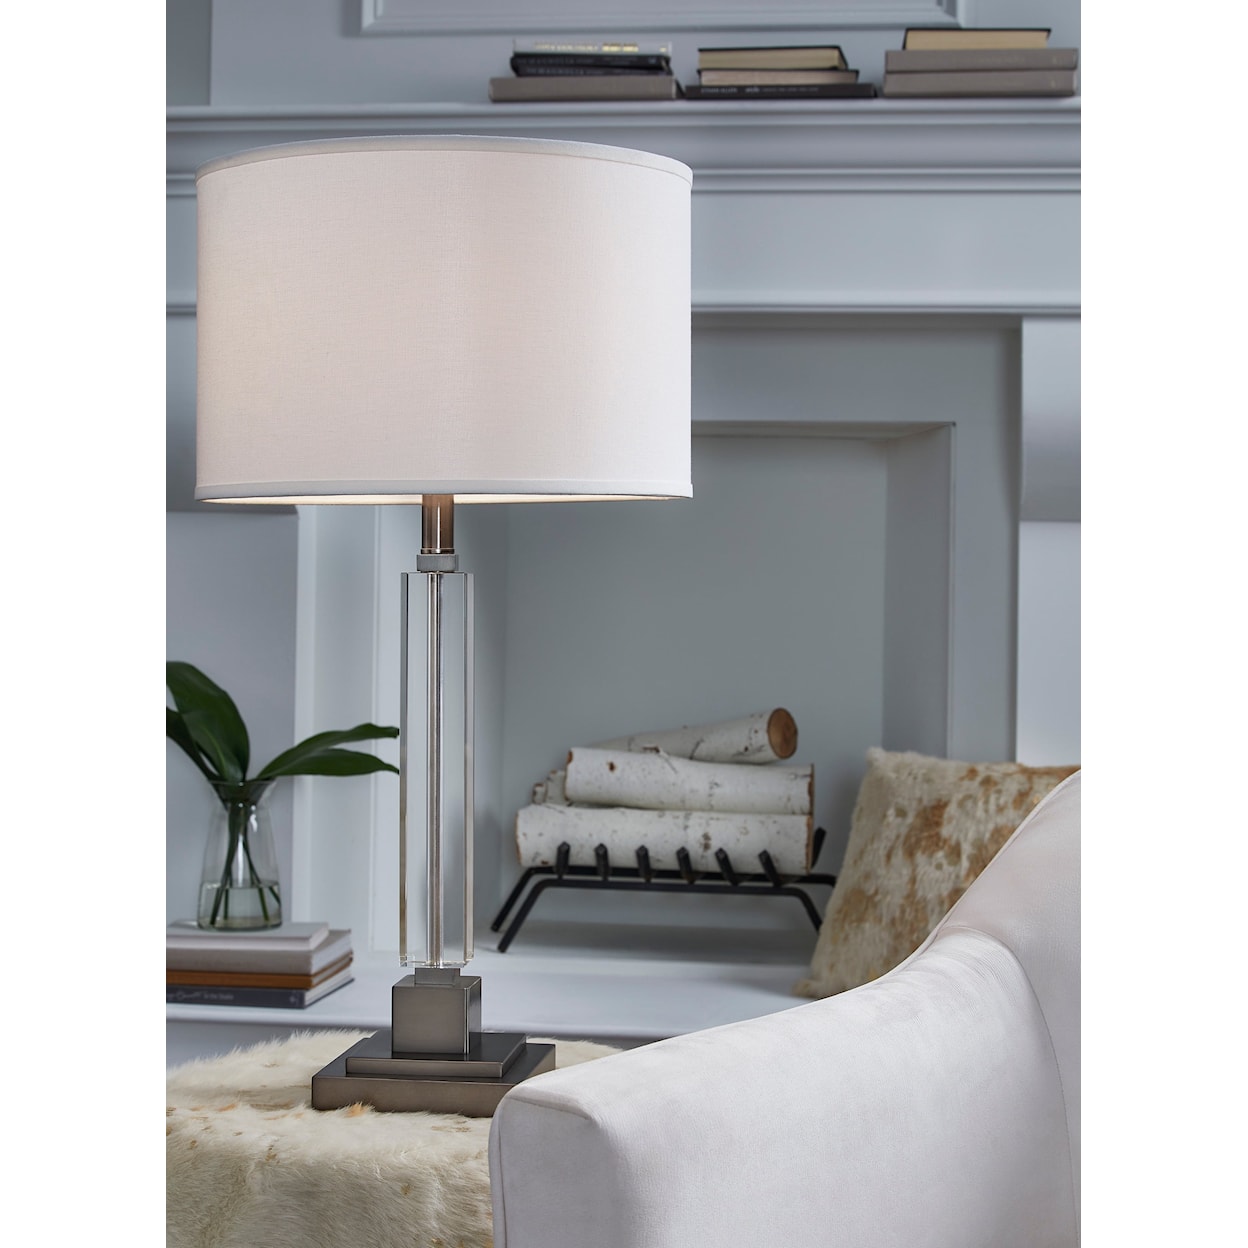 Ashley Furniture Signature Design Lamps - Contemporary Deccalen Table Lamp